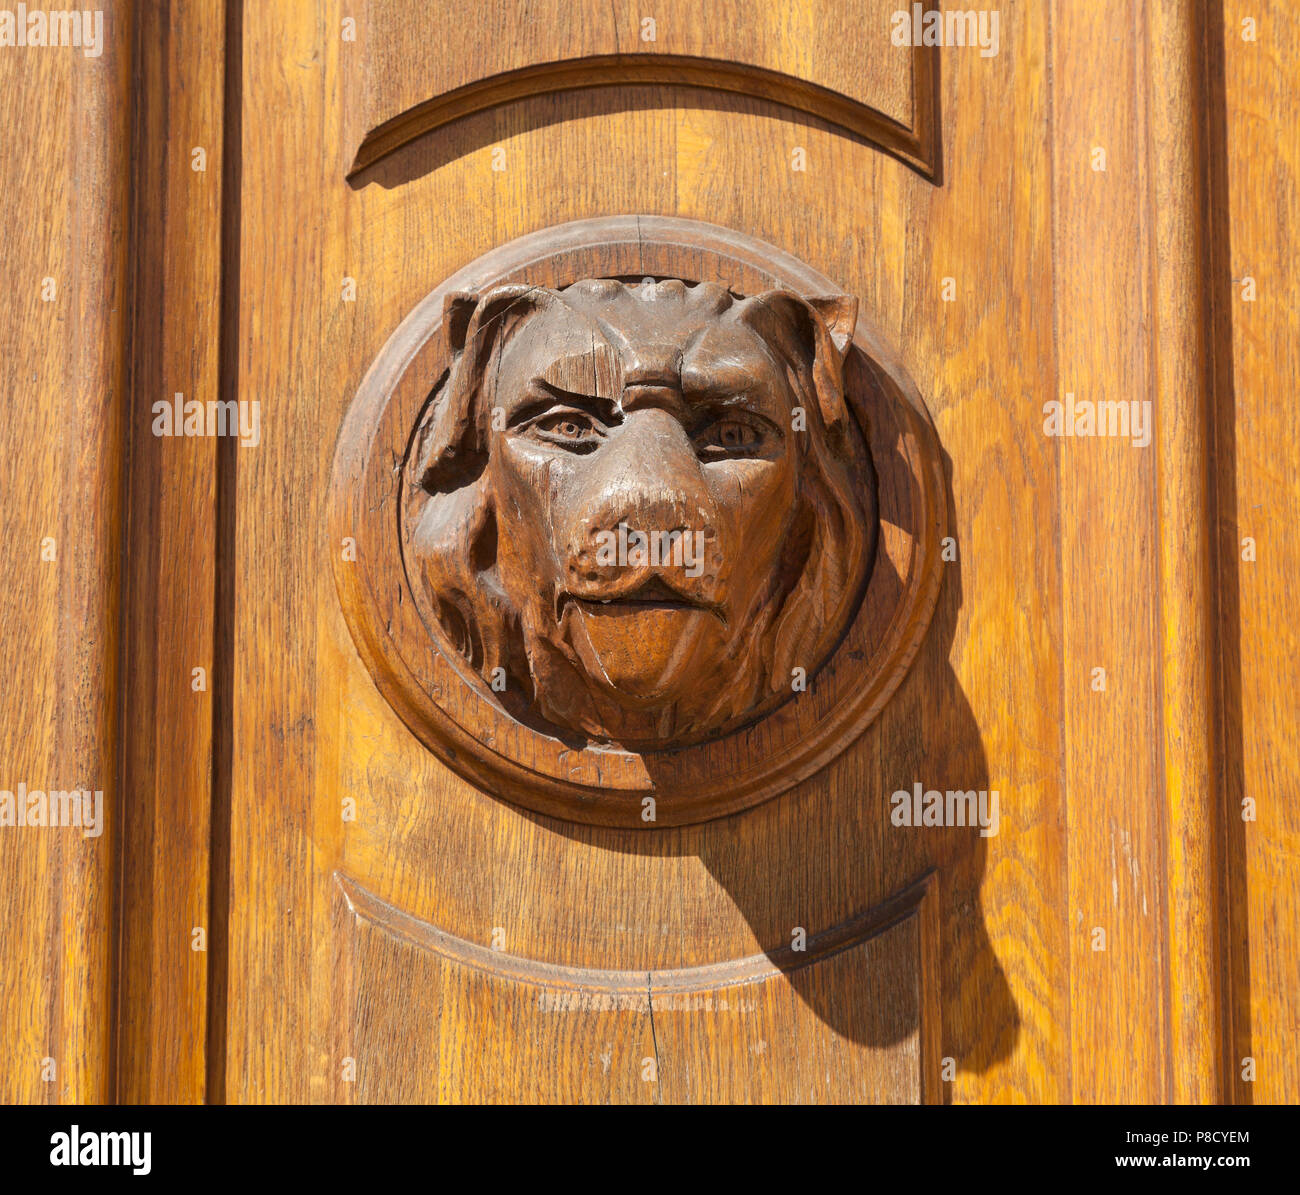 La manija de la puerta de madera tallada, perros cara, sol brillante Foto de stock